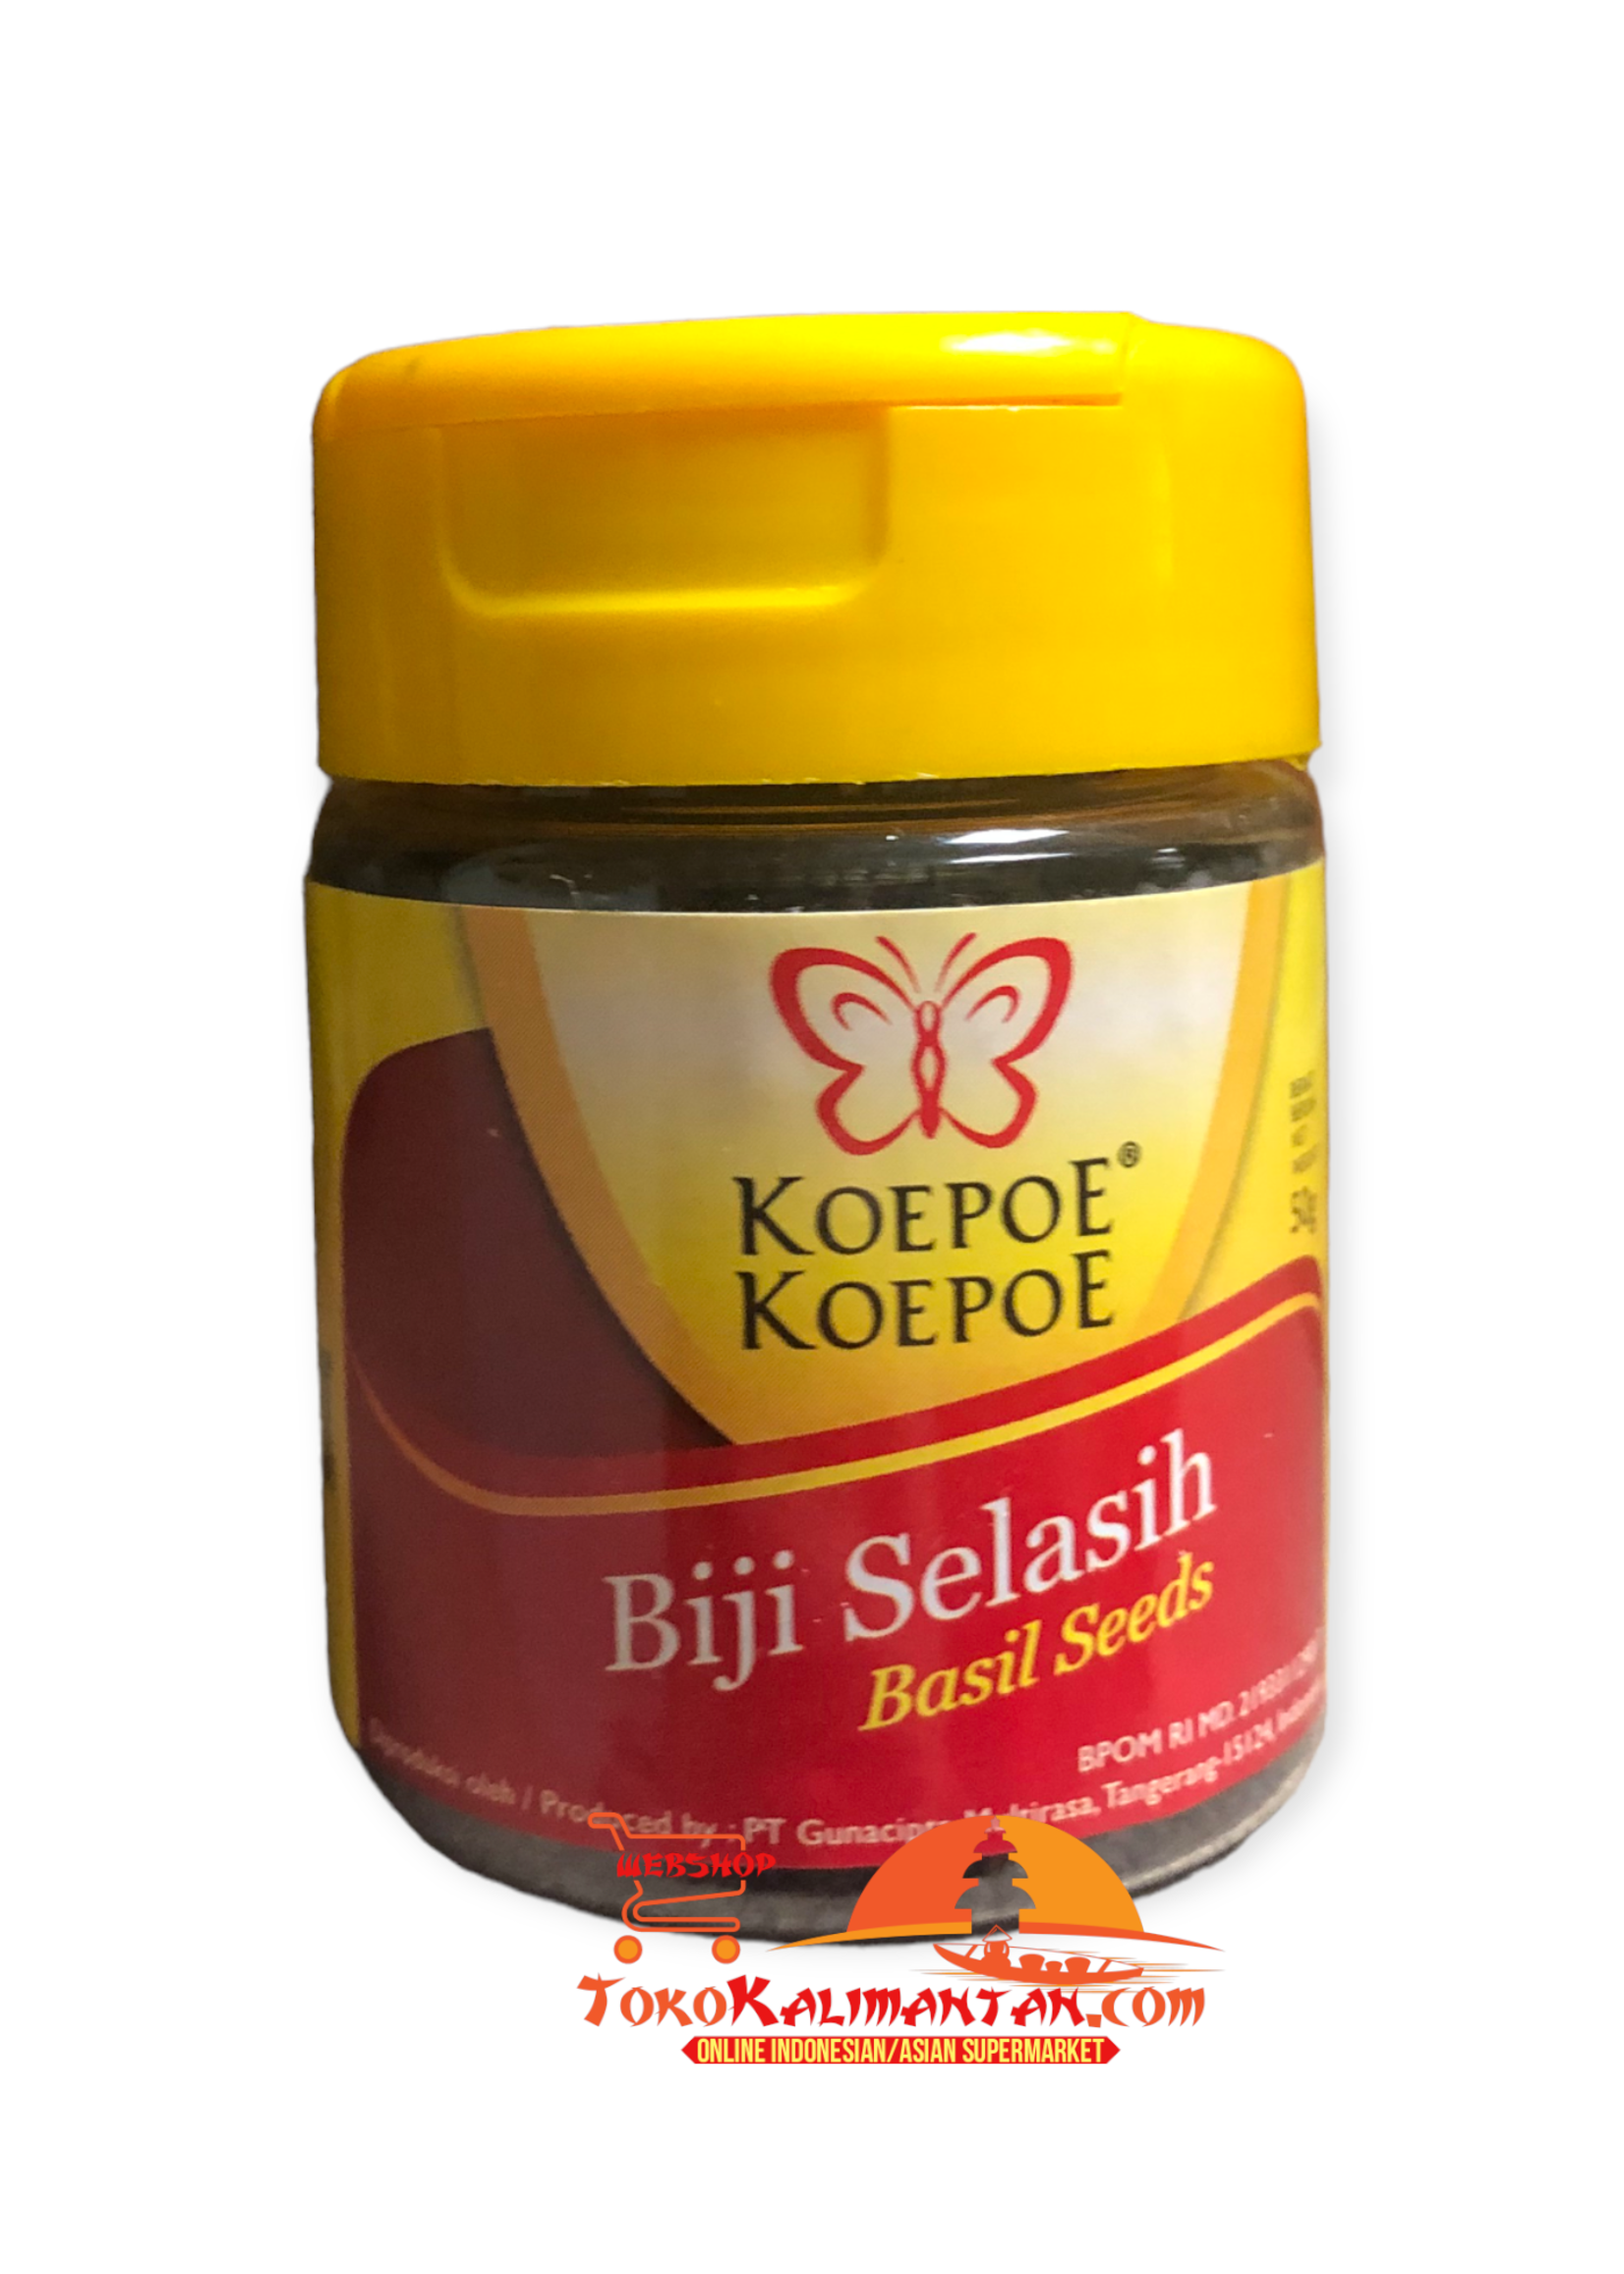 Koepoe-Koepoe Koepoe-Koepoe Biji Selasih